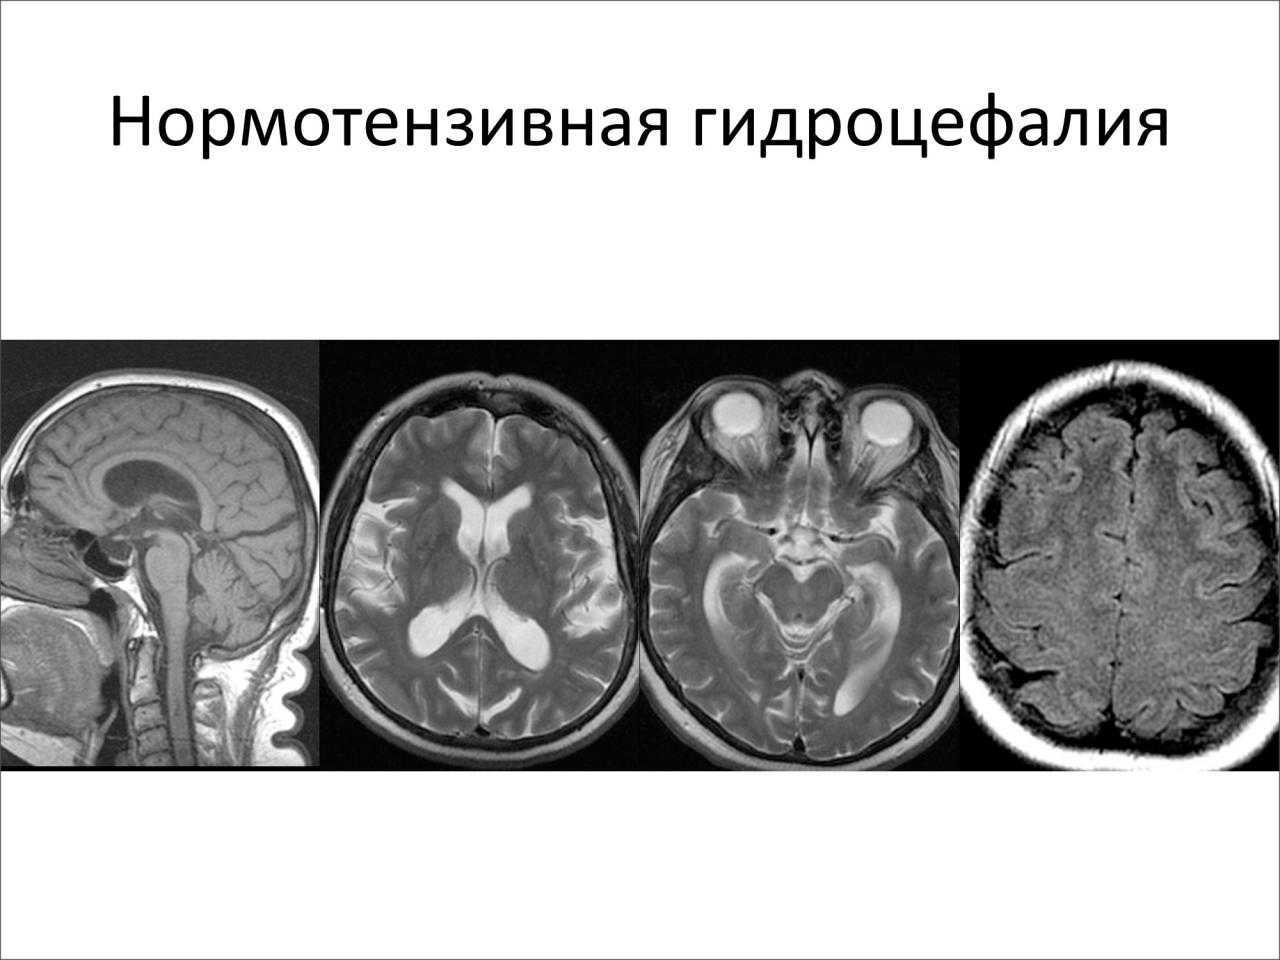 Последствия гидроцефалии головного мозга. Клинические симптомы гидроцефалии. Нормотензивная гидроцефалия мрт. Наружная гидроцефалия головного мозга кт. Компьютерная томография головного мозга гидроцефалия.